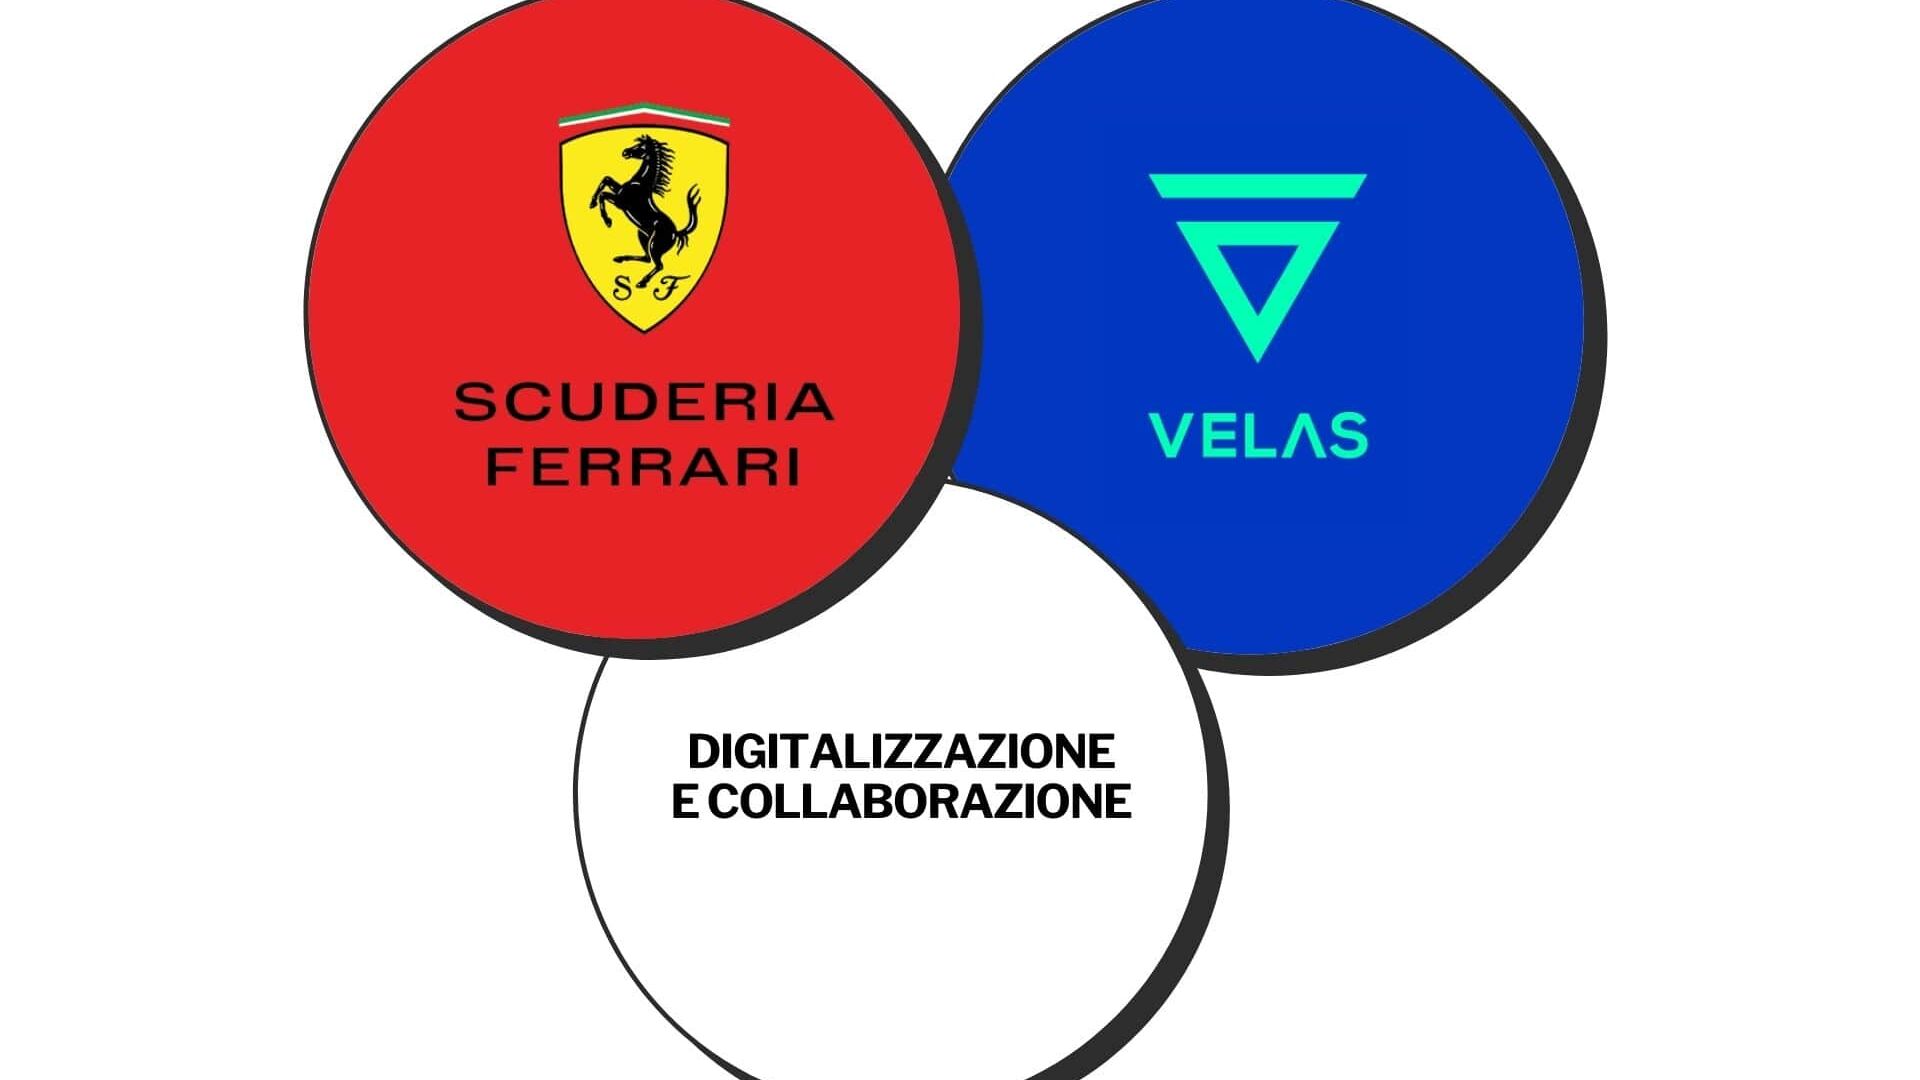 Accordo di collaborazione sui contenuti digitali tra Velas Network AG e Scuderia Ferrari (Grafica: Roberta Ruko)s Network AG